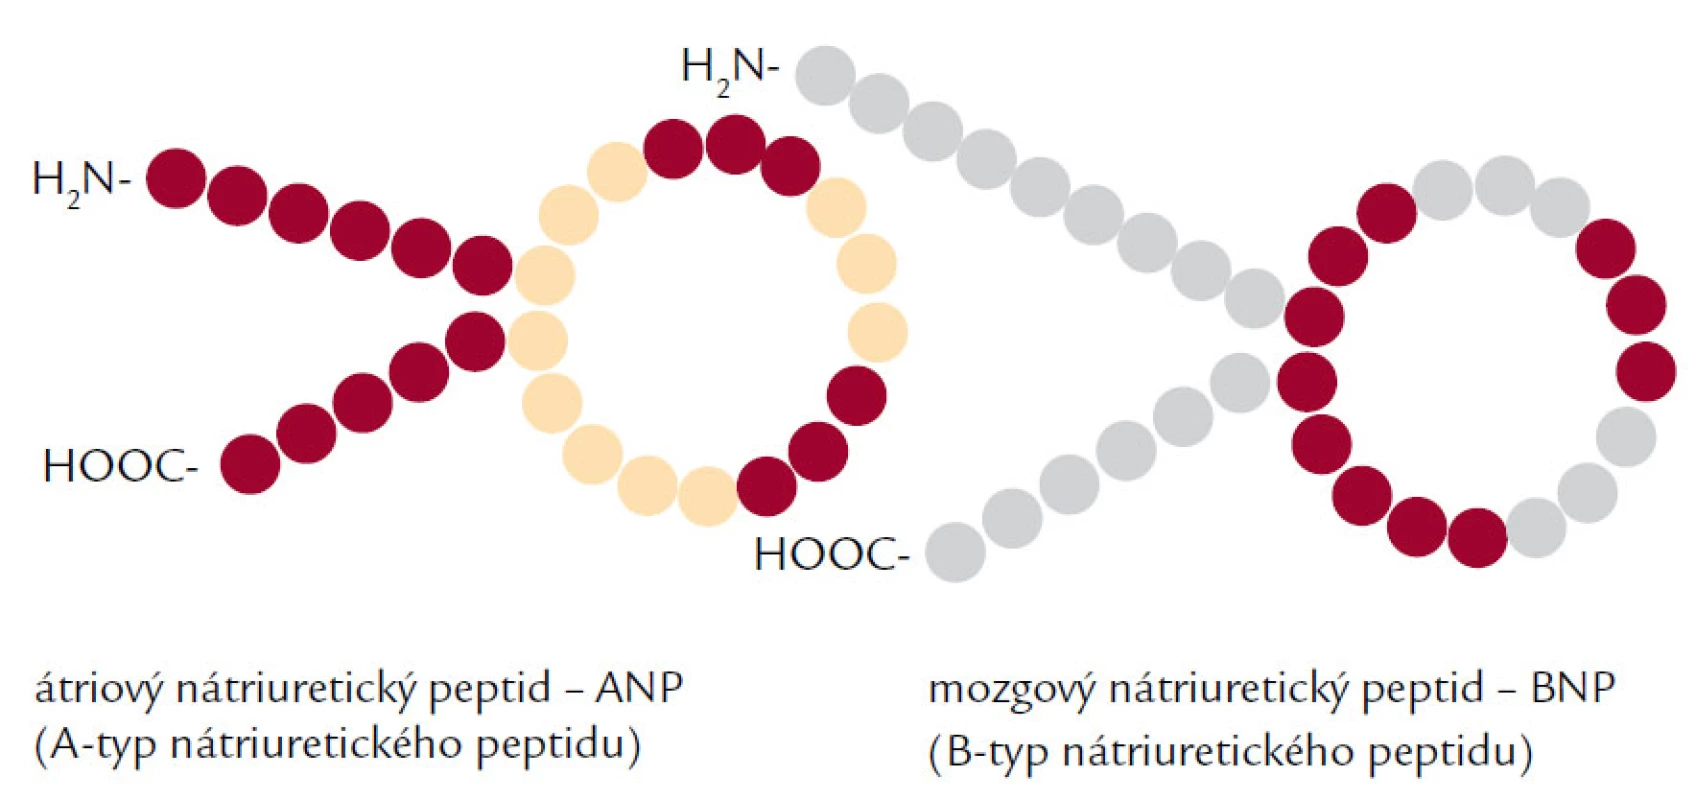 Štruktúra natriuretických peptidov – ANP a BNP.